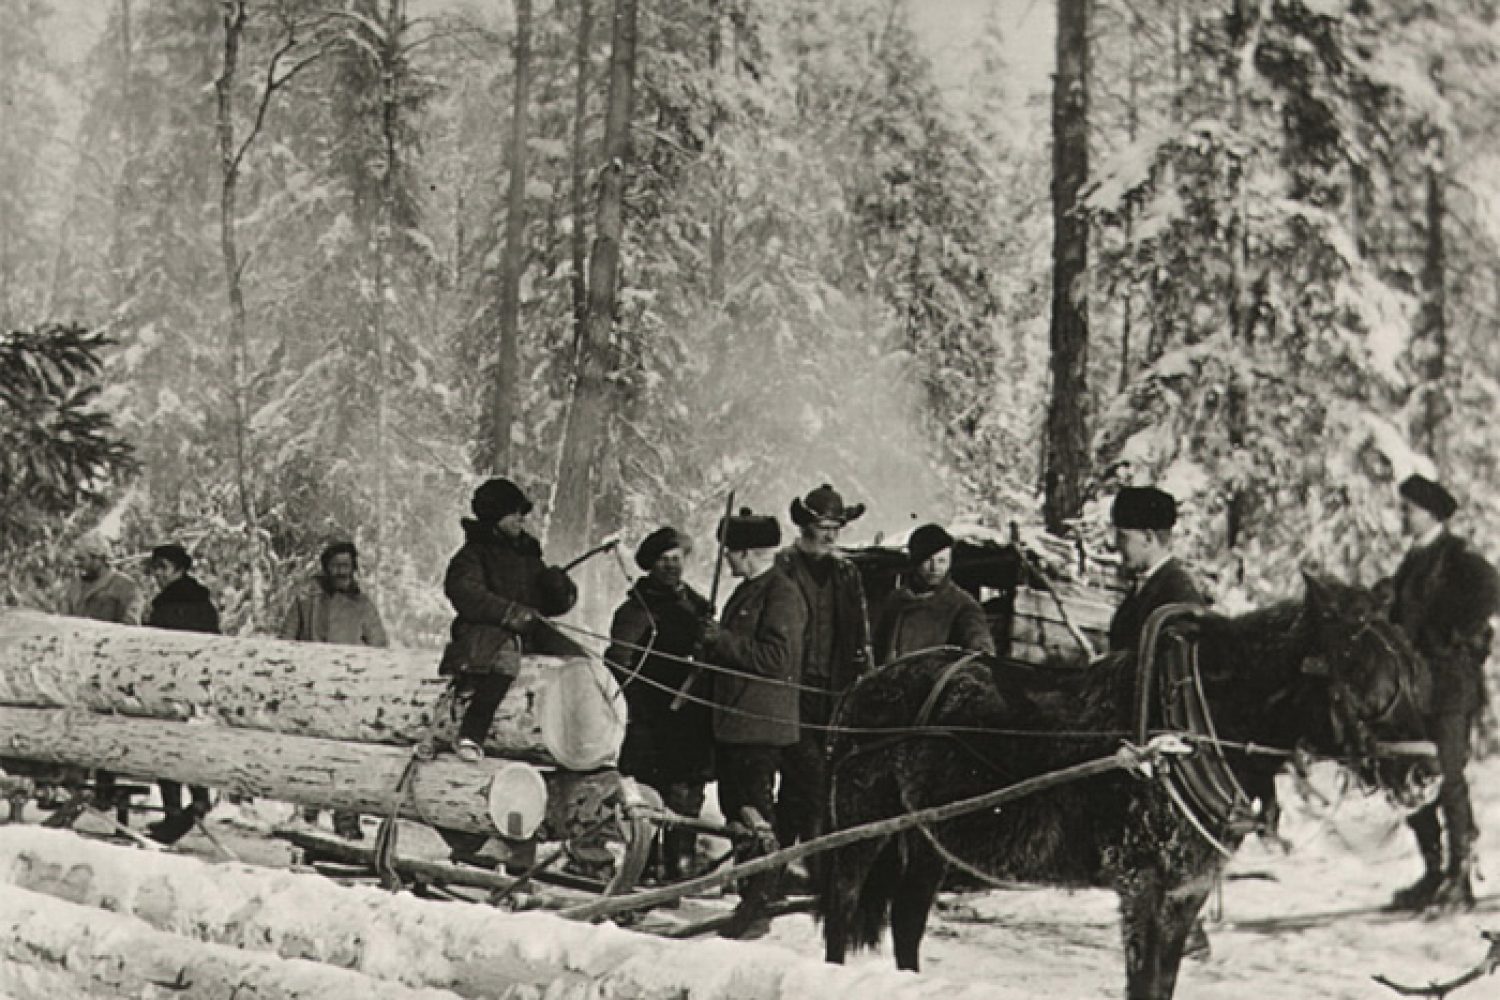 Mustavalkoisessa kuvassa hevonen vetää rekeä, jonka kyydissä on kolme tukkia ja kuski. Ympärillä on pari muuta rekeä sekä kahdeksan muuta ihmistä. Sää on luminen ja kaikki ovat pukeutuneet lämpimästi.